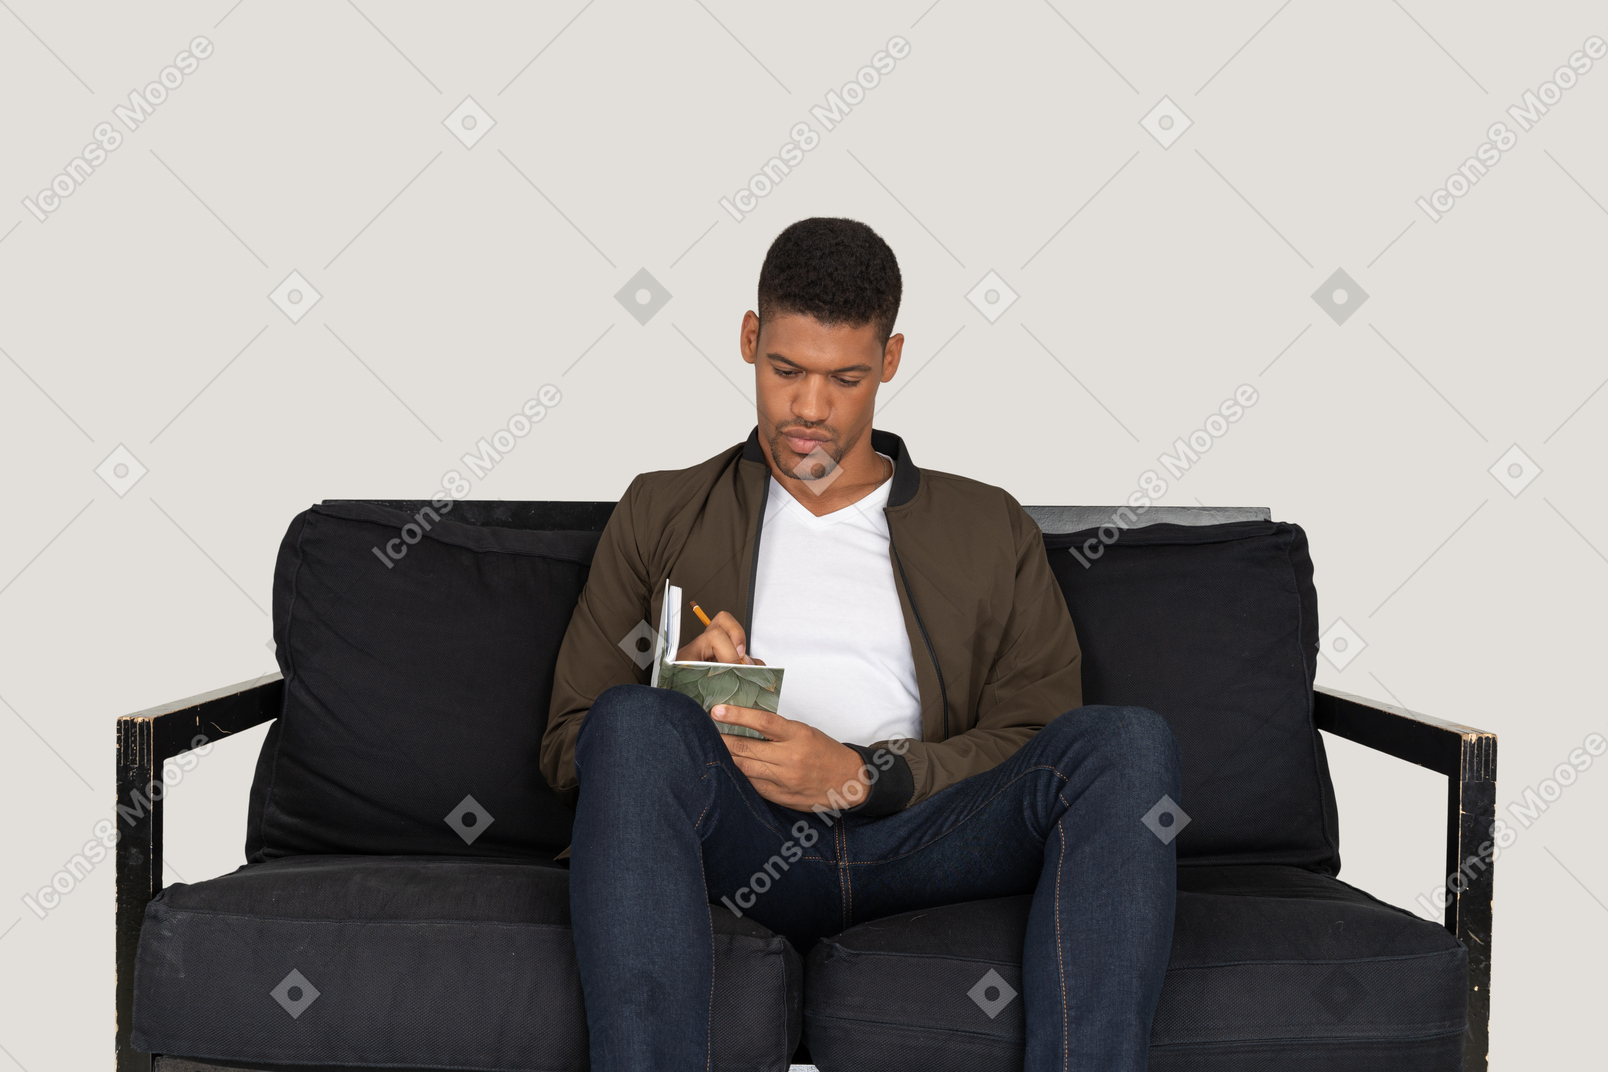 Vista frontal del joven sentado en un sofá y tomando notas